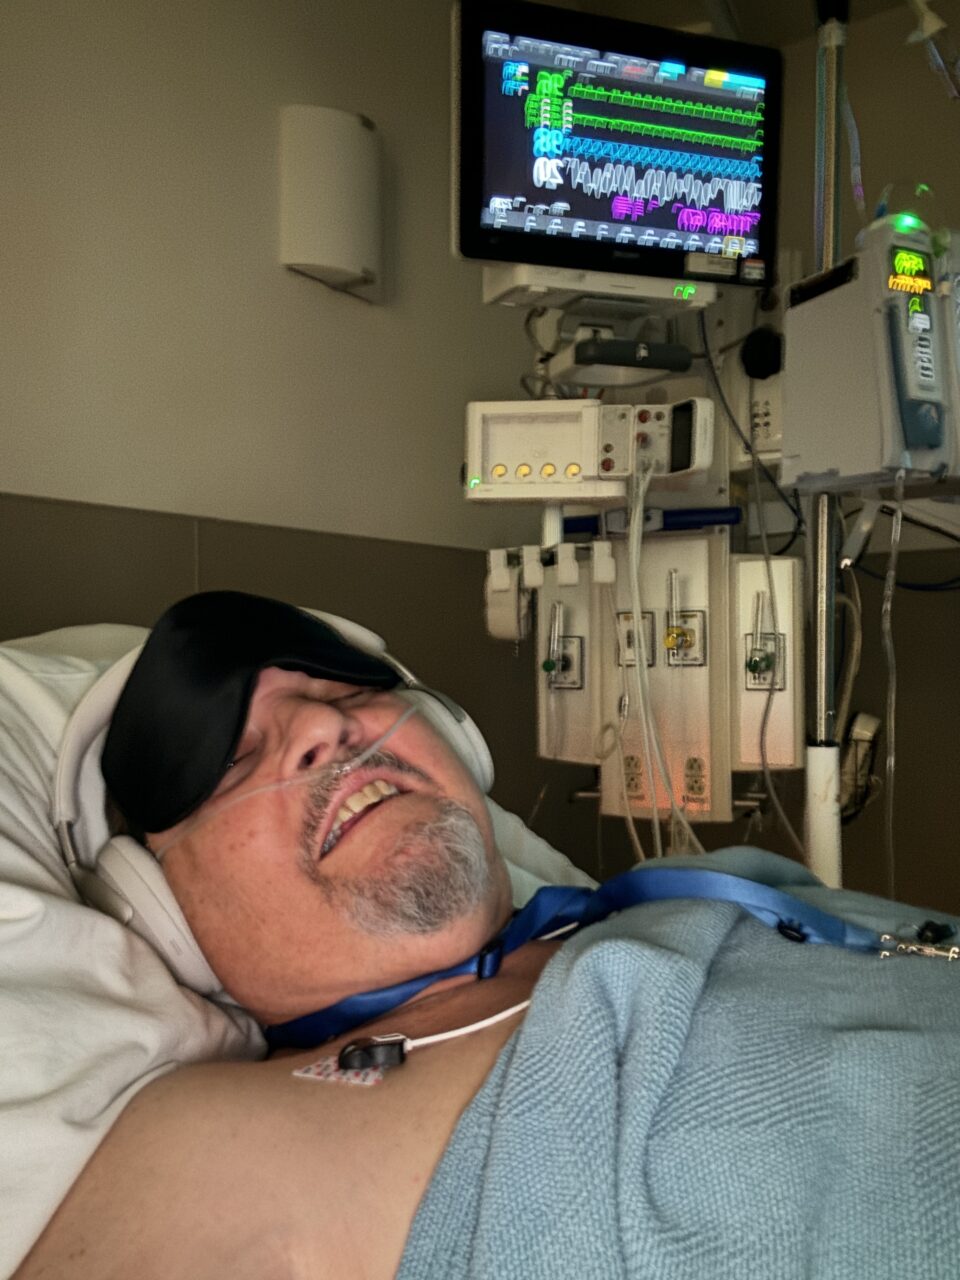 Mężczyzna leżący w szpitalnym łóżku z założoną maską tlenową i słuchawkami, obok urządzenia z wyświetlaczem monitorującym parametry życiowe.